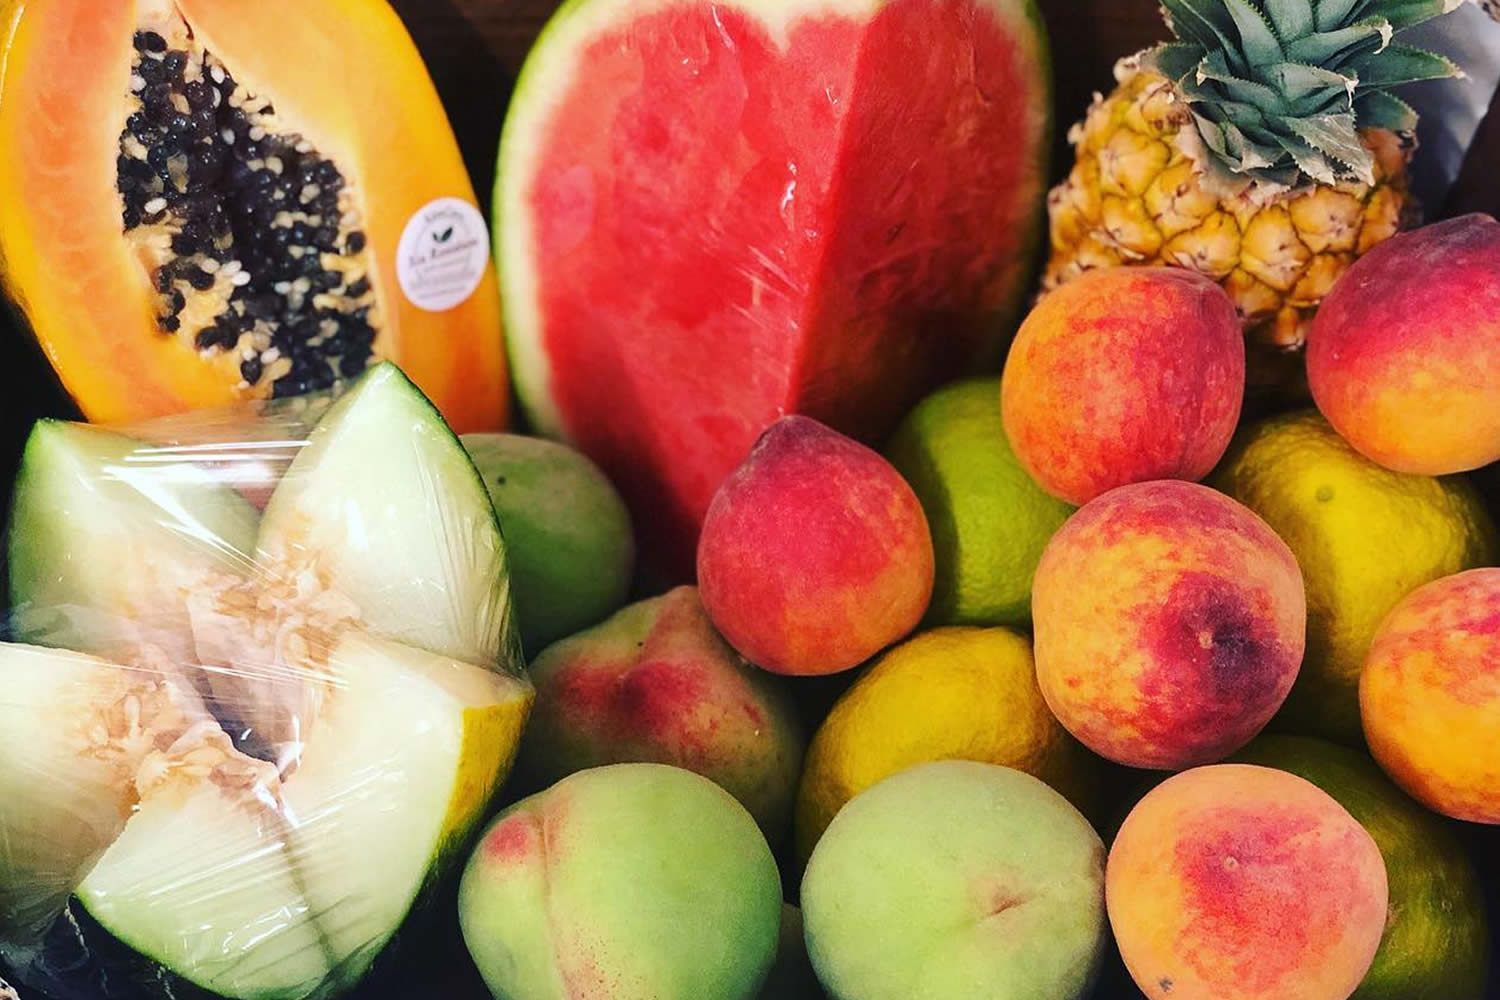 Bazar Frutería La Diana en Agaete, supermarket, fruits, avocado, watermelon, bananas, apples, mango